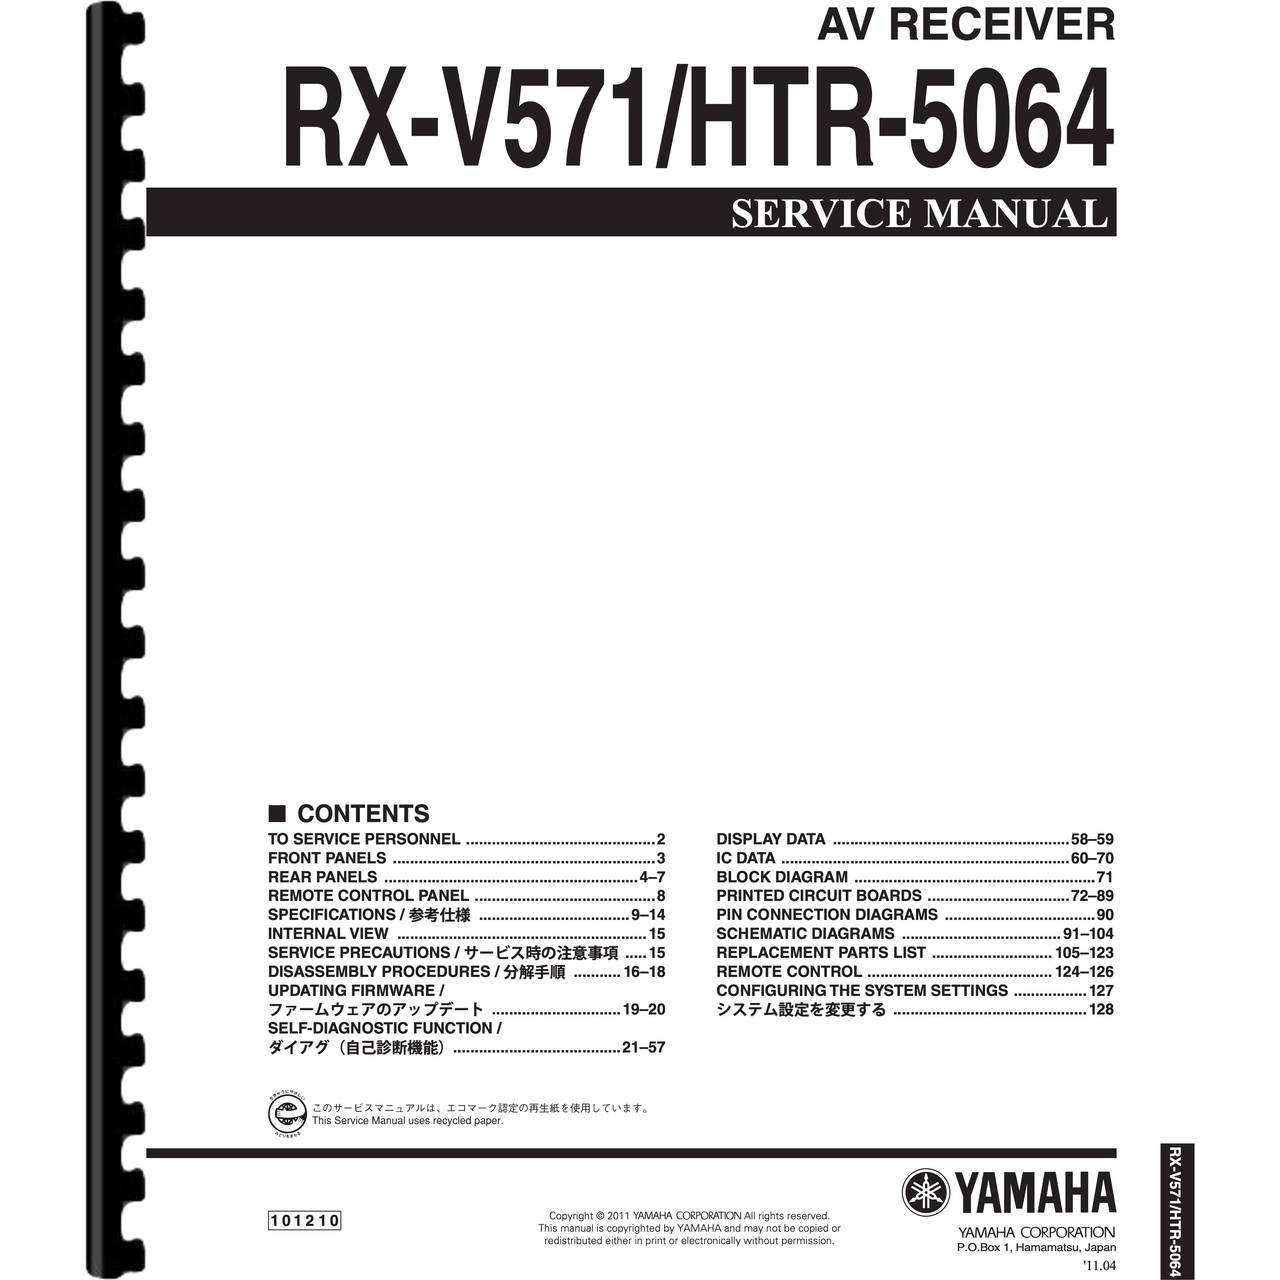 Yamaha HTR-5064